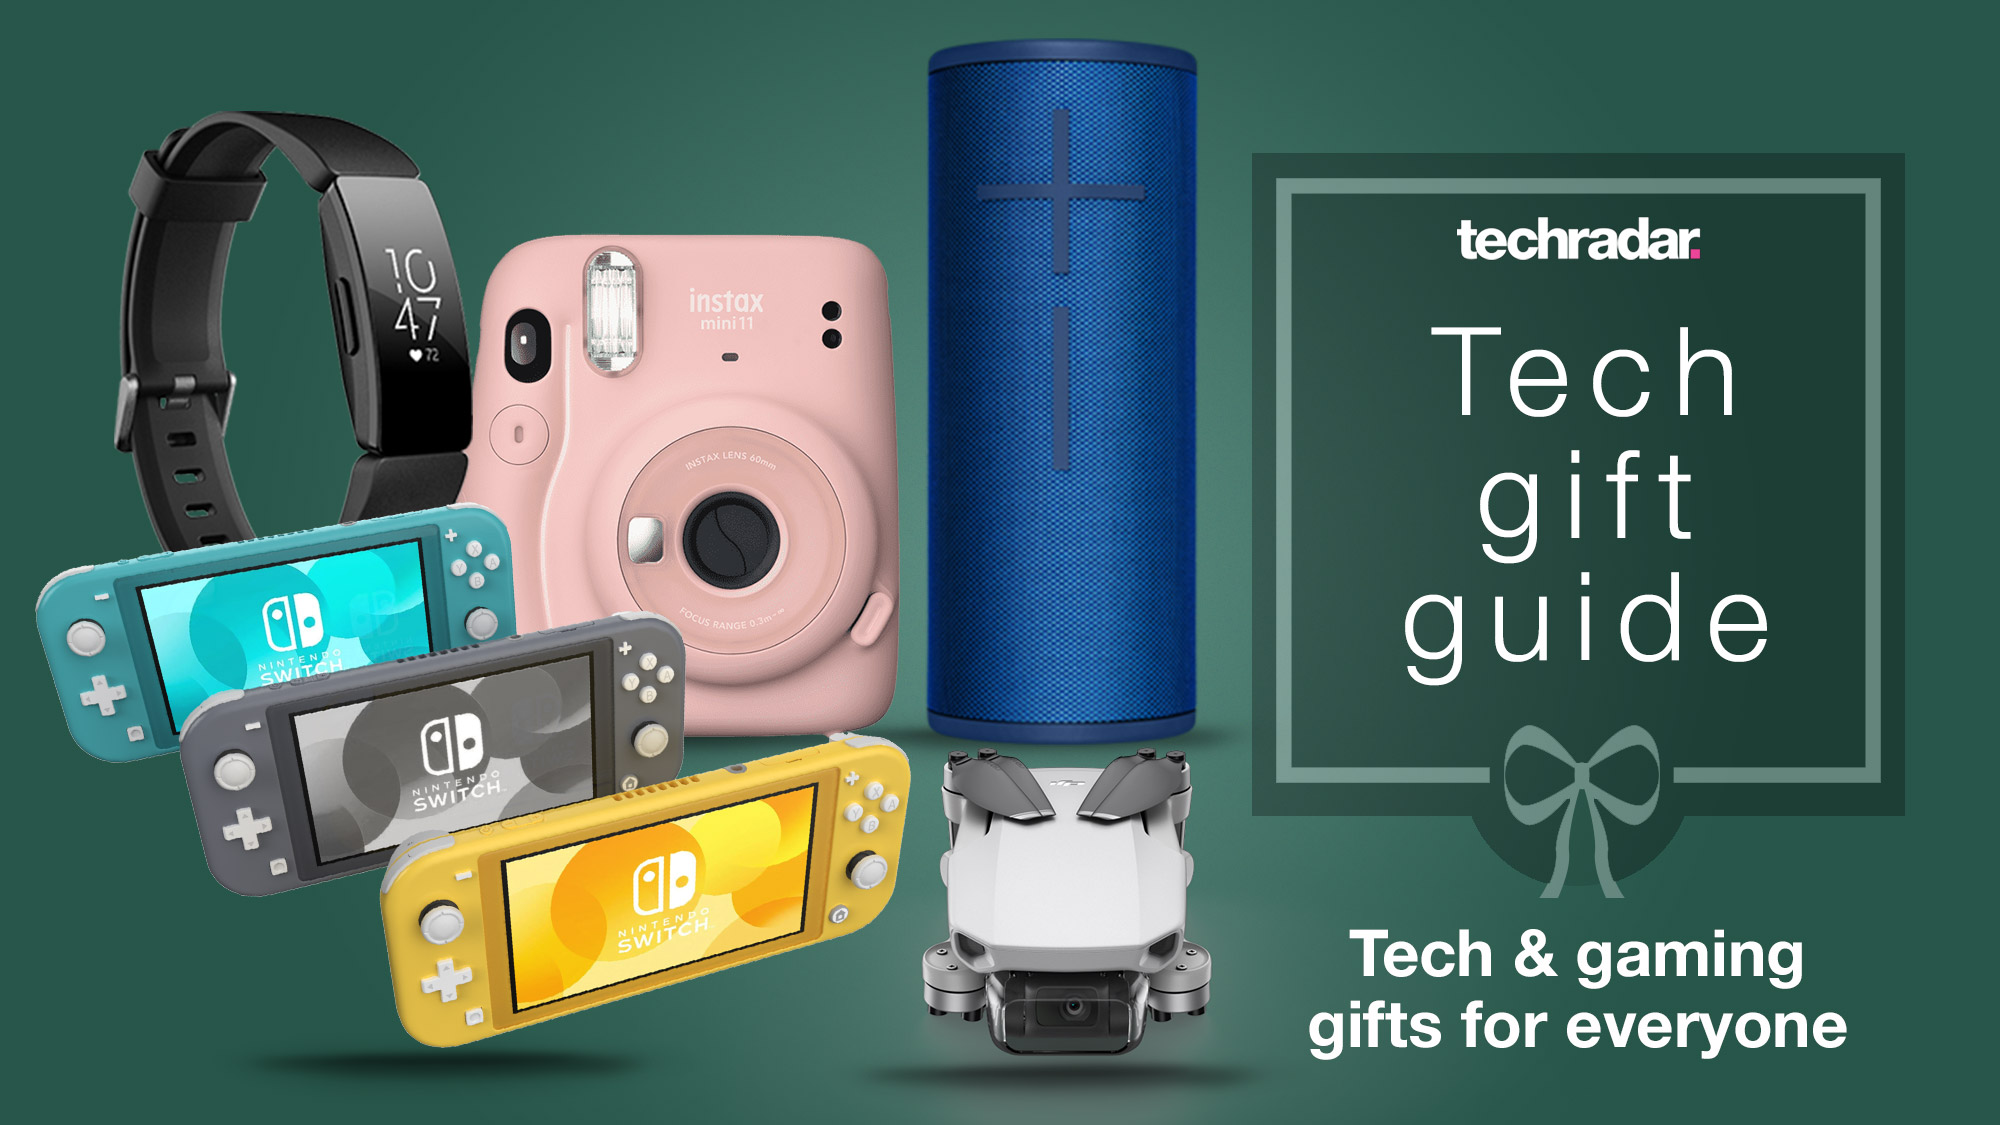 Tech gift ideas 15 top gizmos and gadgets for everyone TechRadar